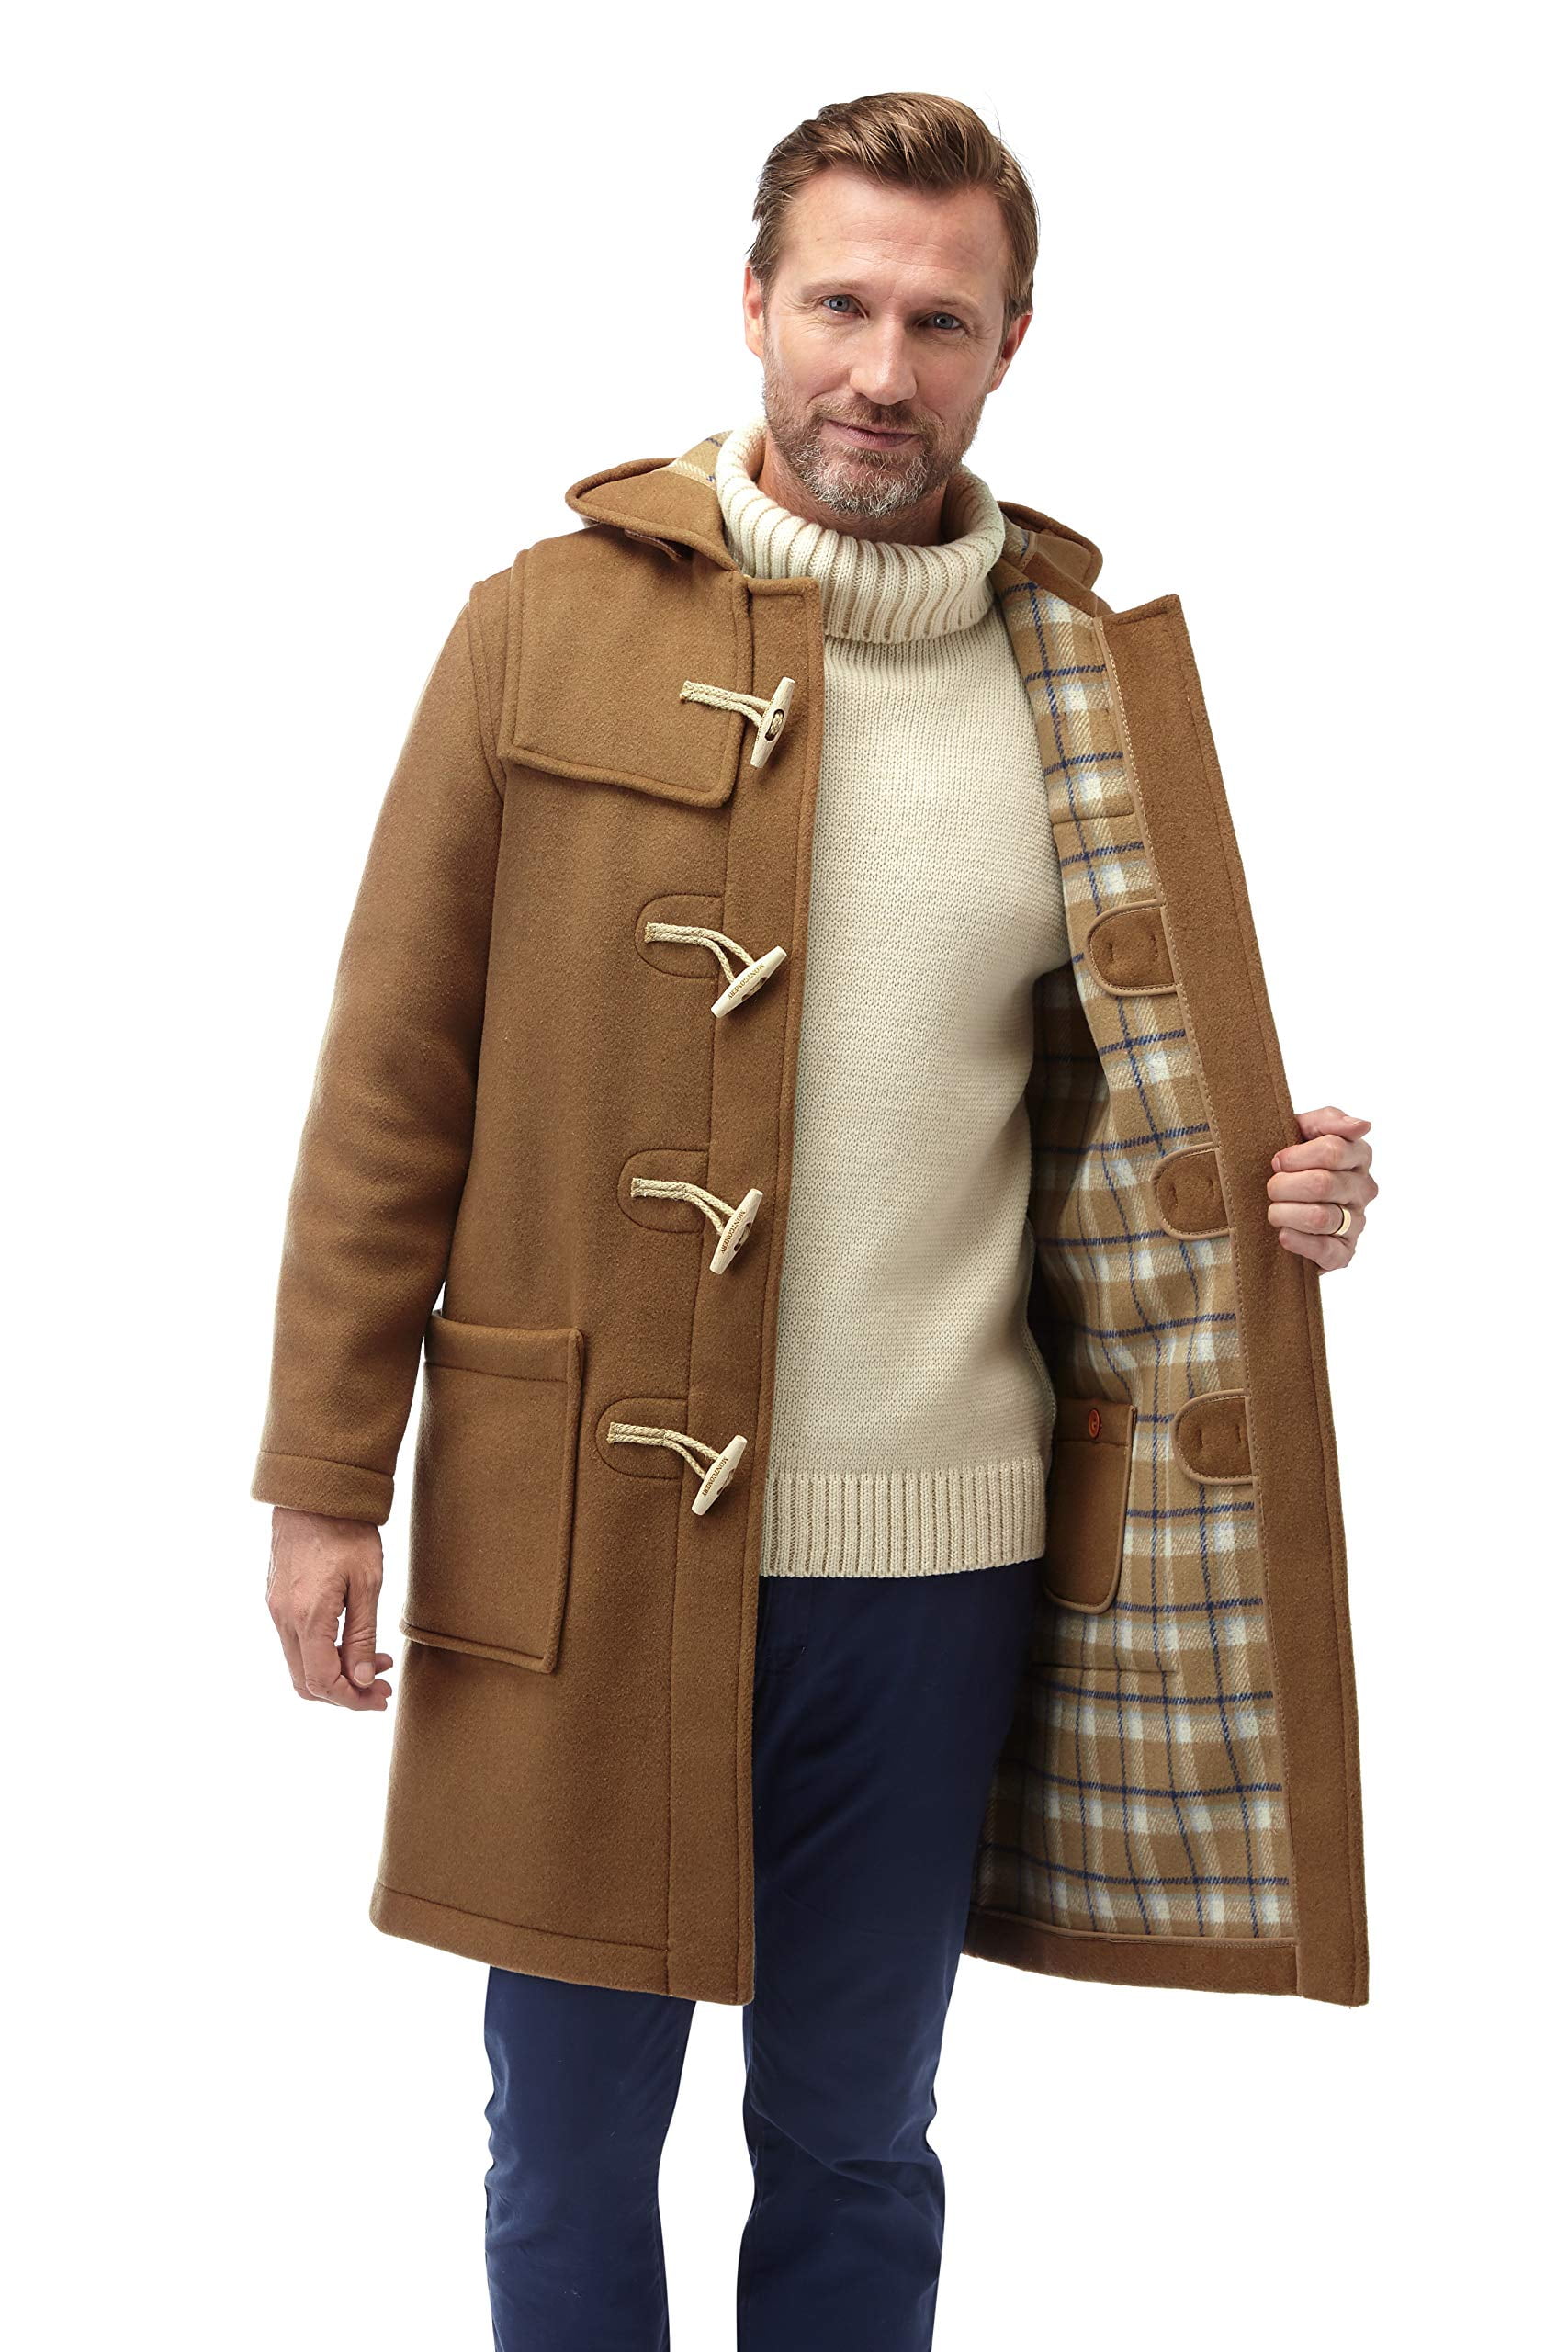 Montgomery - Mens Wooden Toggles Duffle Coat (44, Camel) - Walmart.com ...